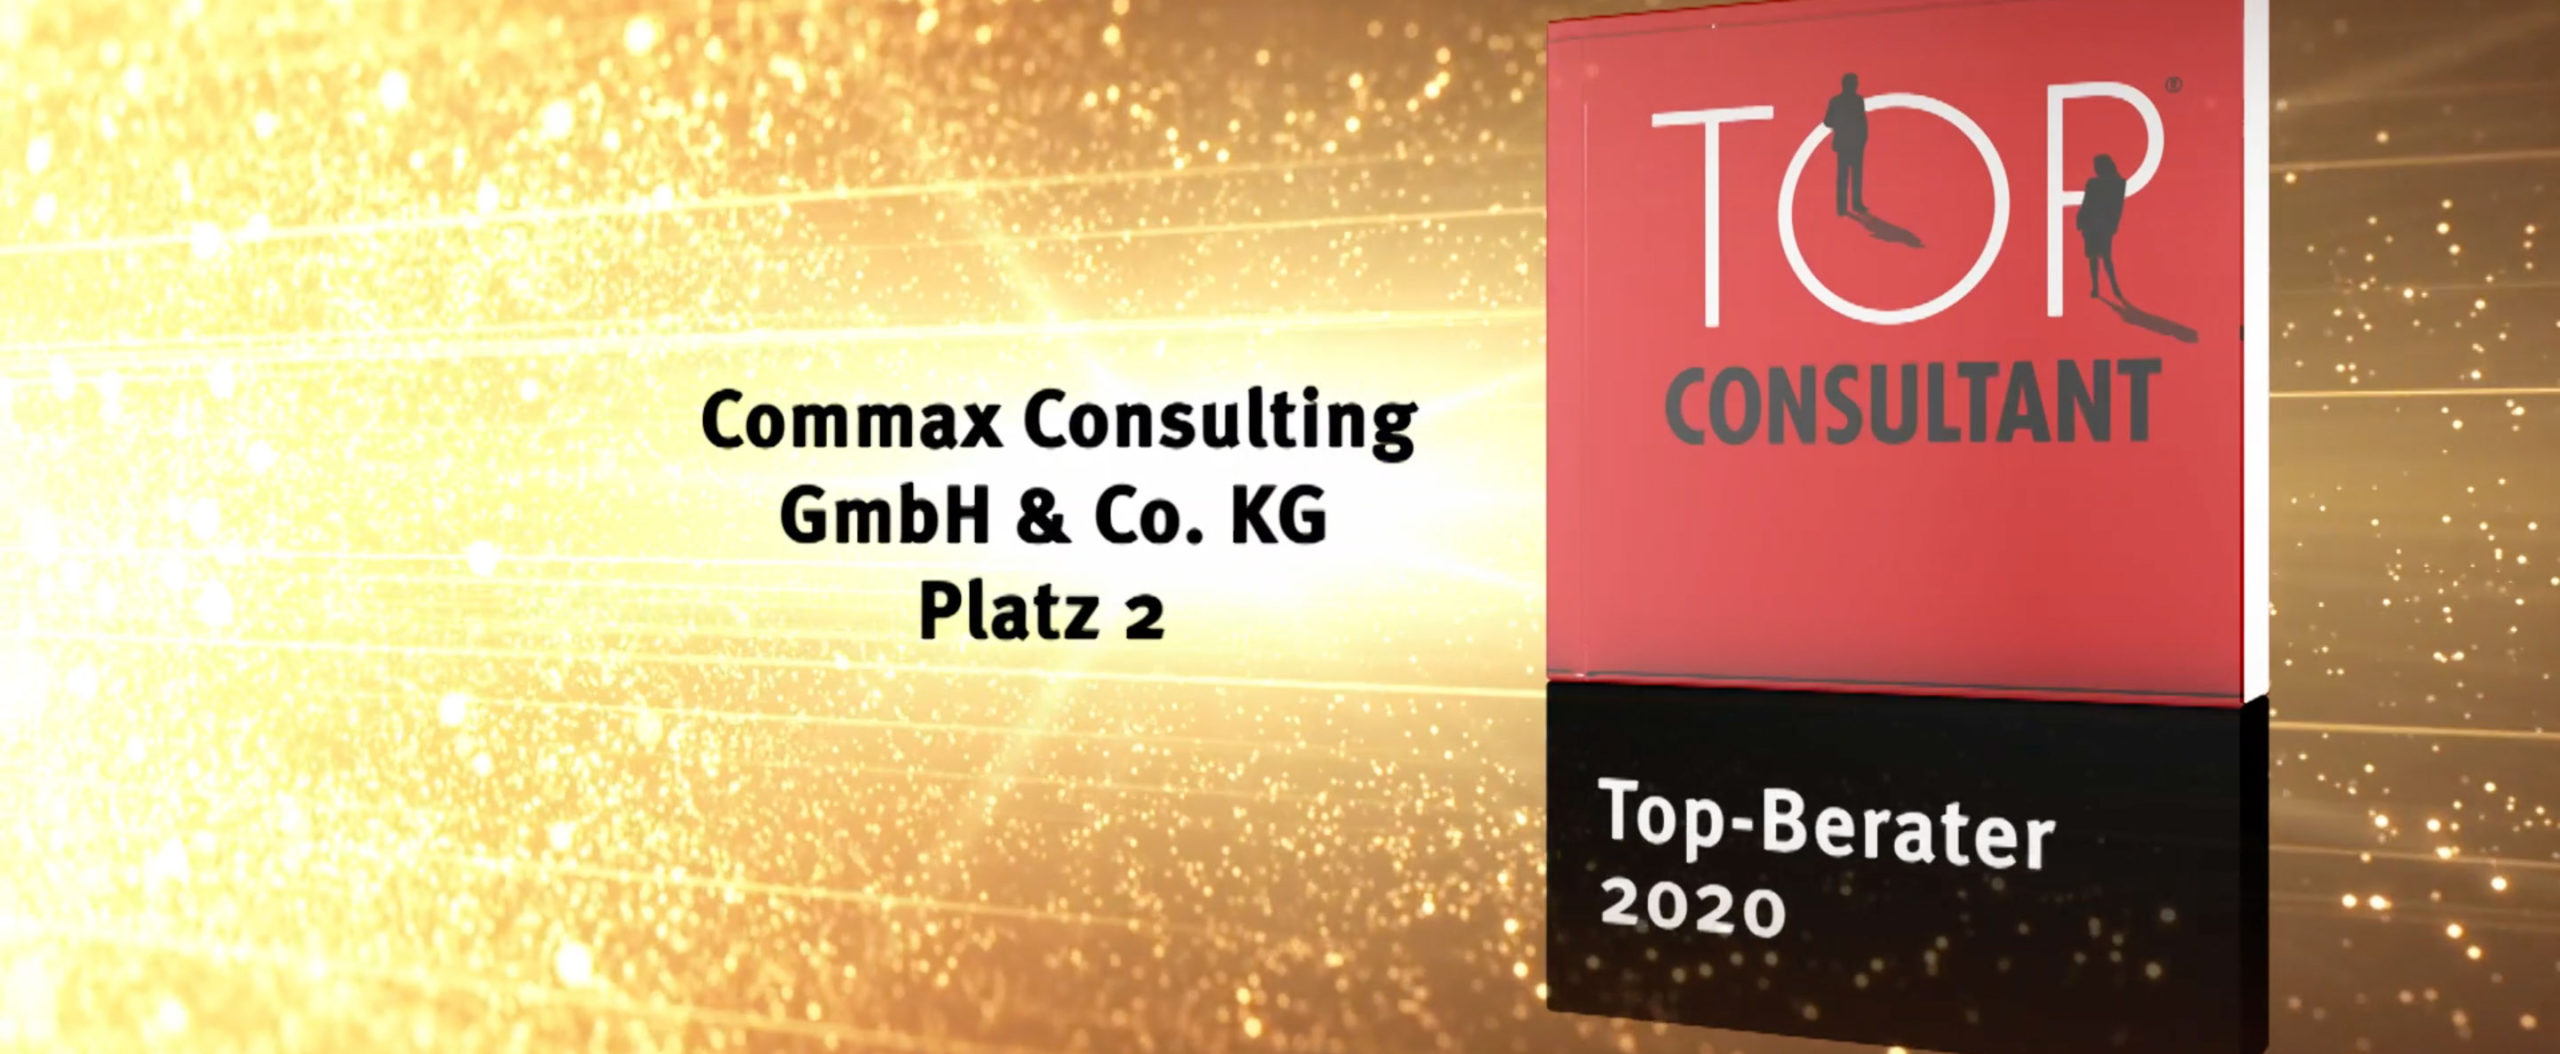 Commax TOP Consultant der Film